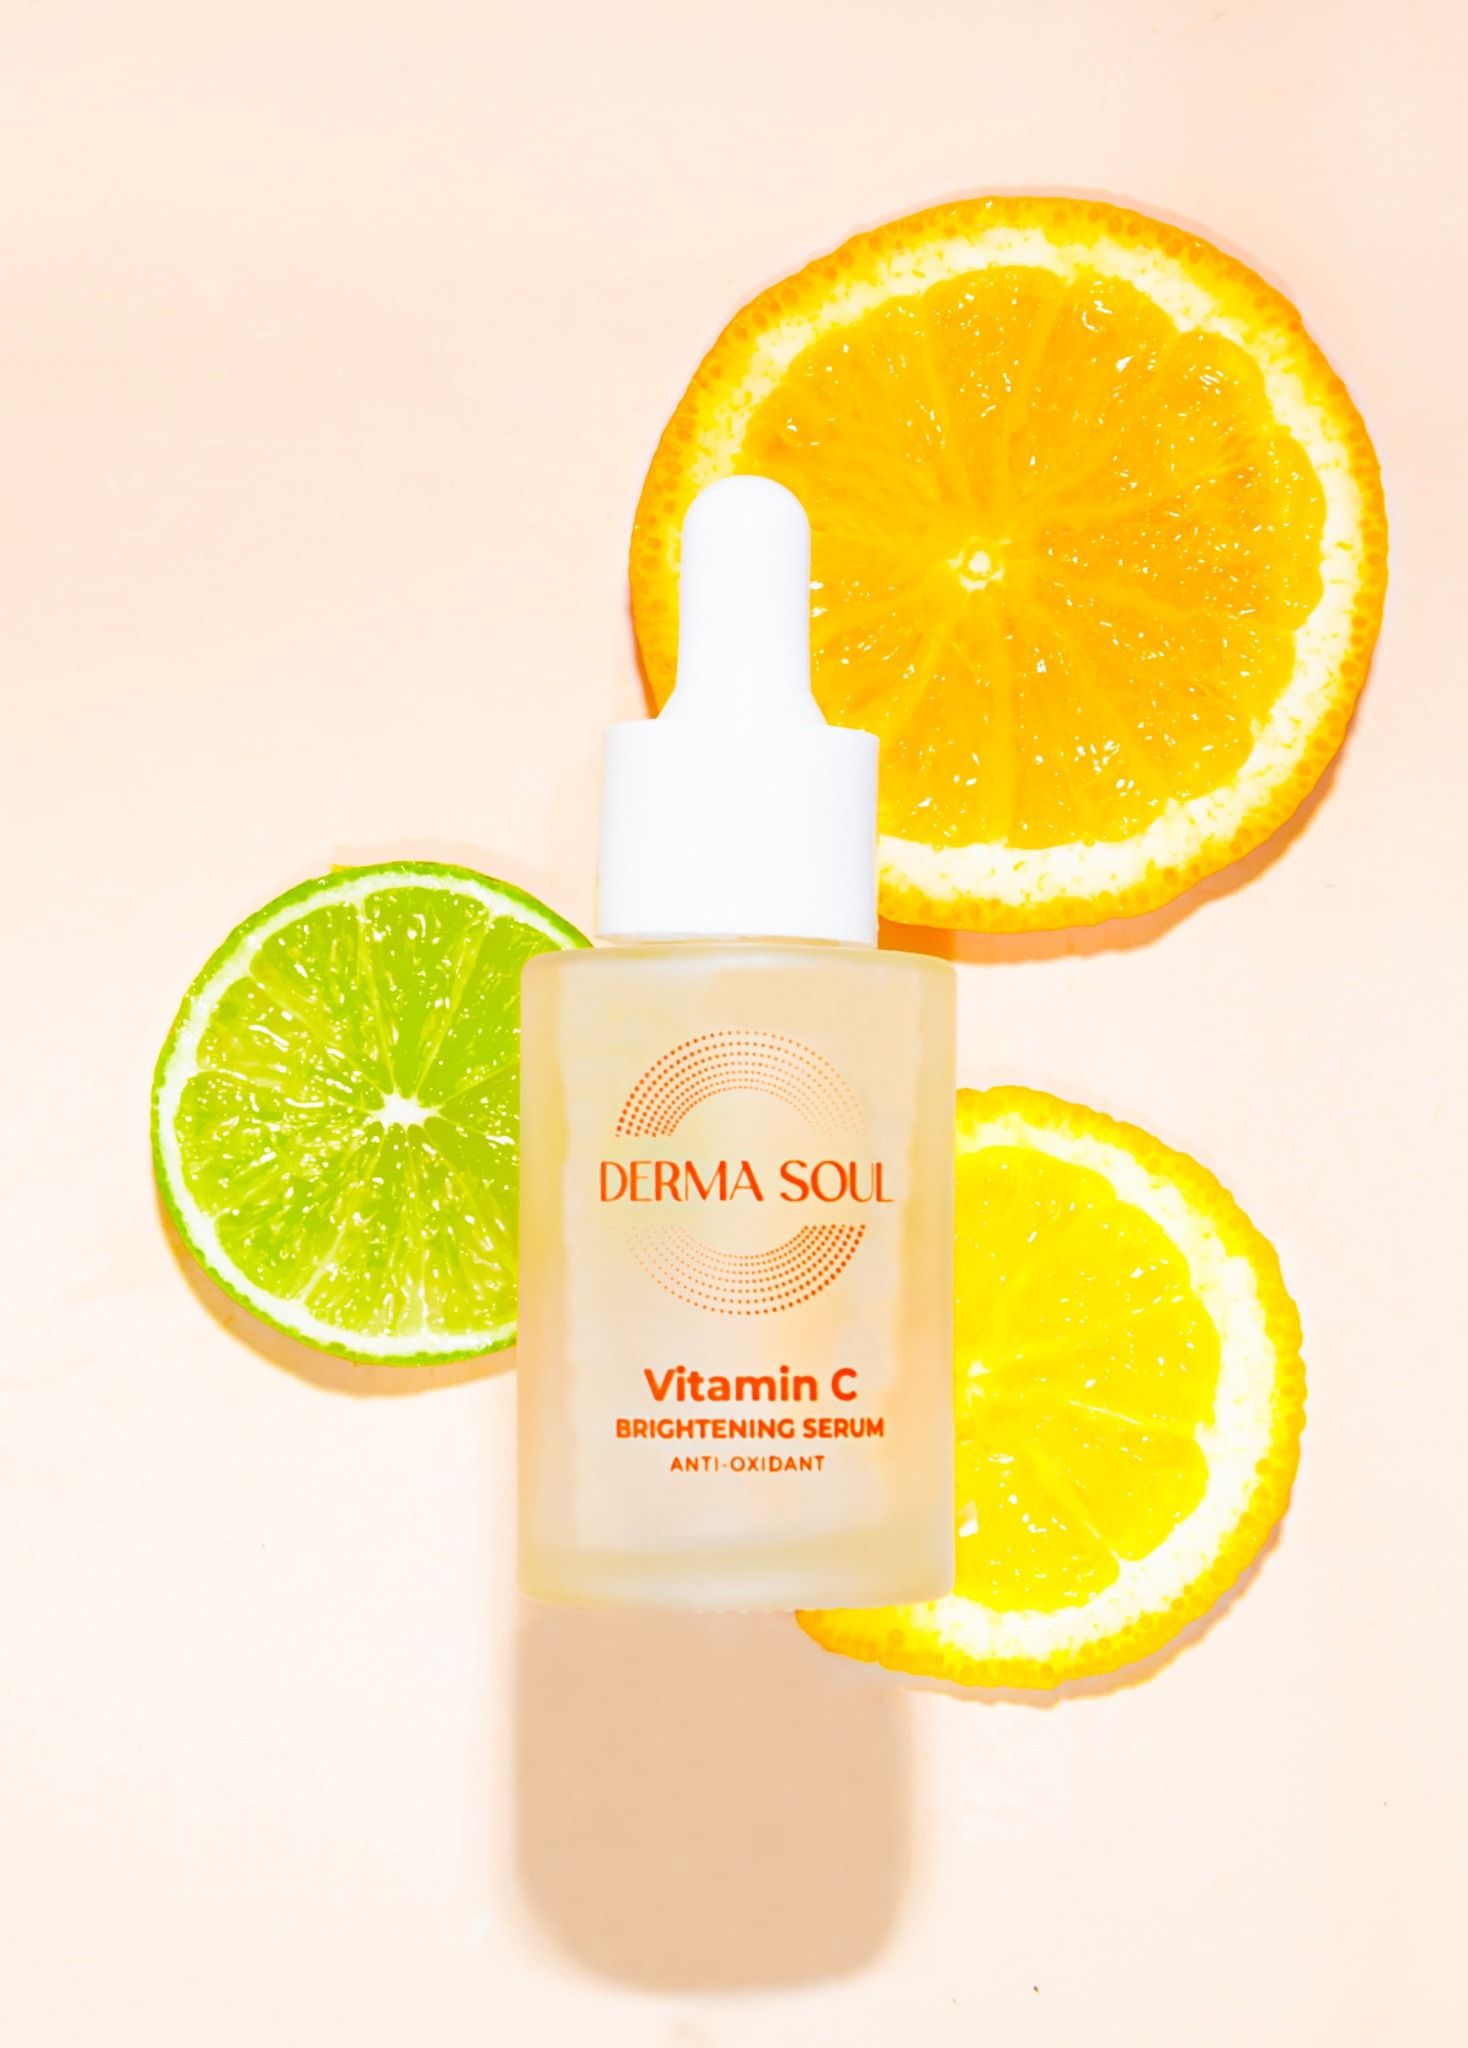  Serum Derma Soul Vitamin C Brightening Serum sáng da và làm mờ vết thâm chuyên sâu 